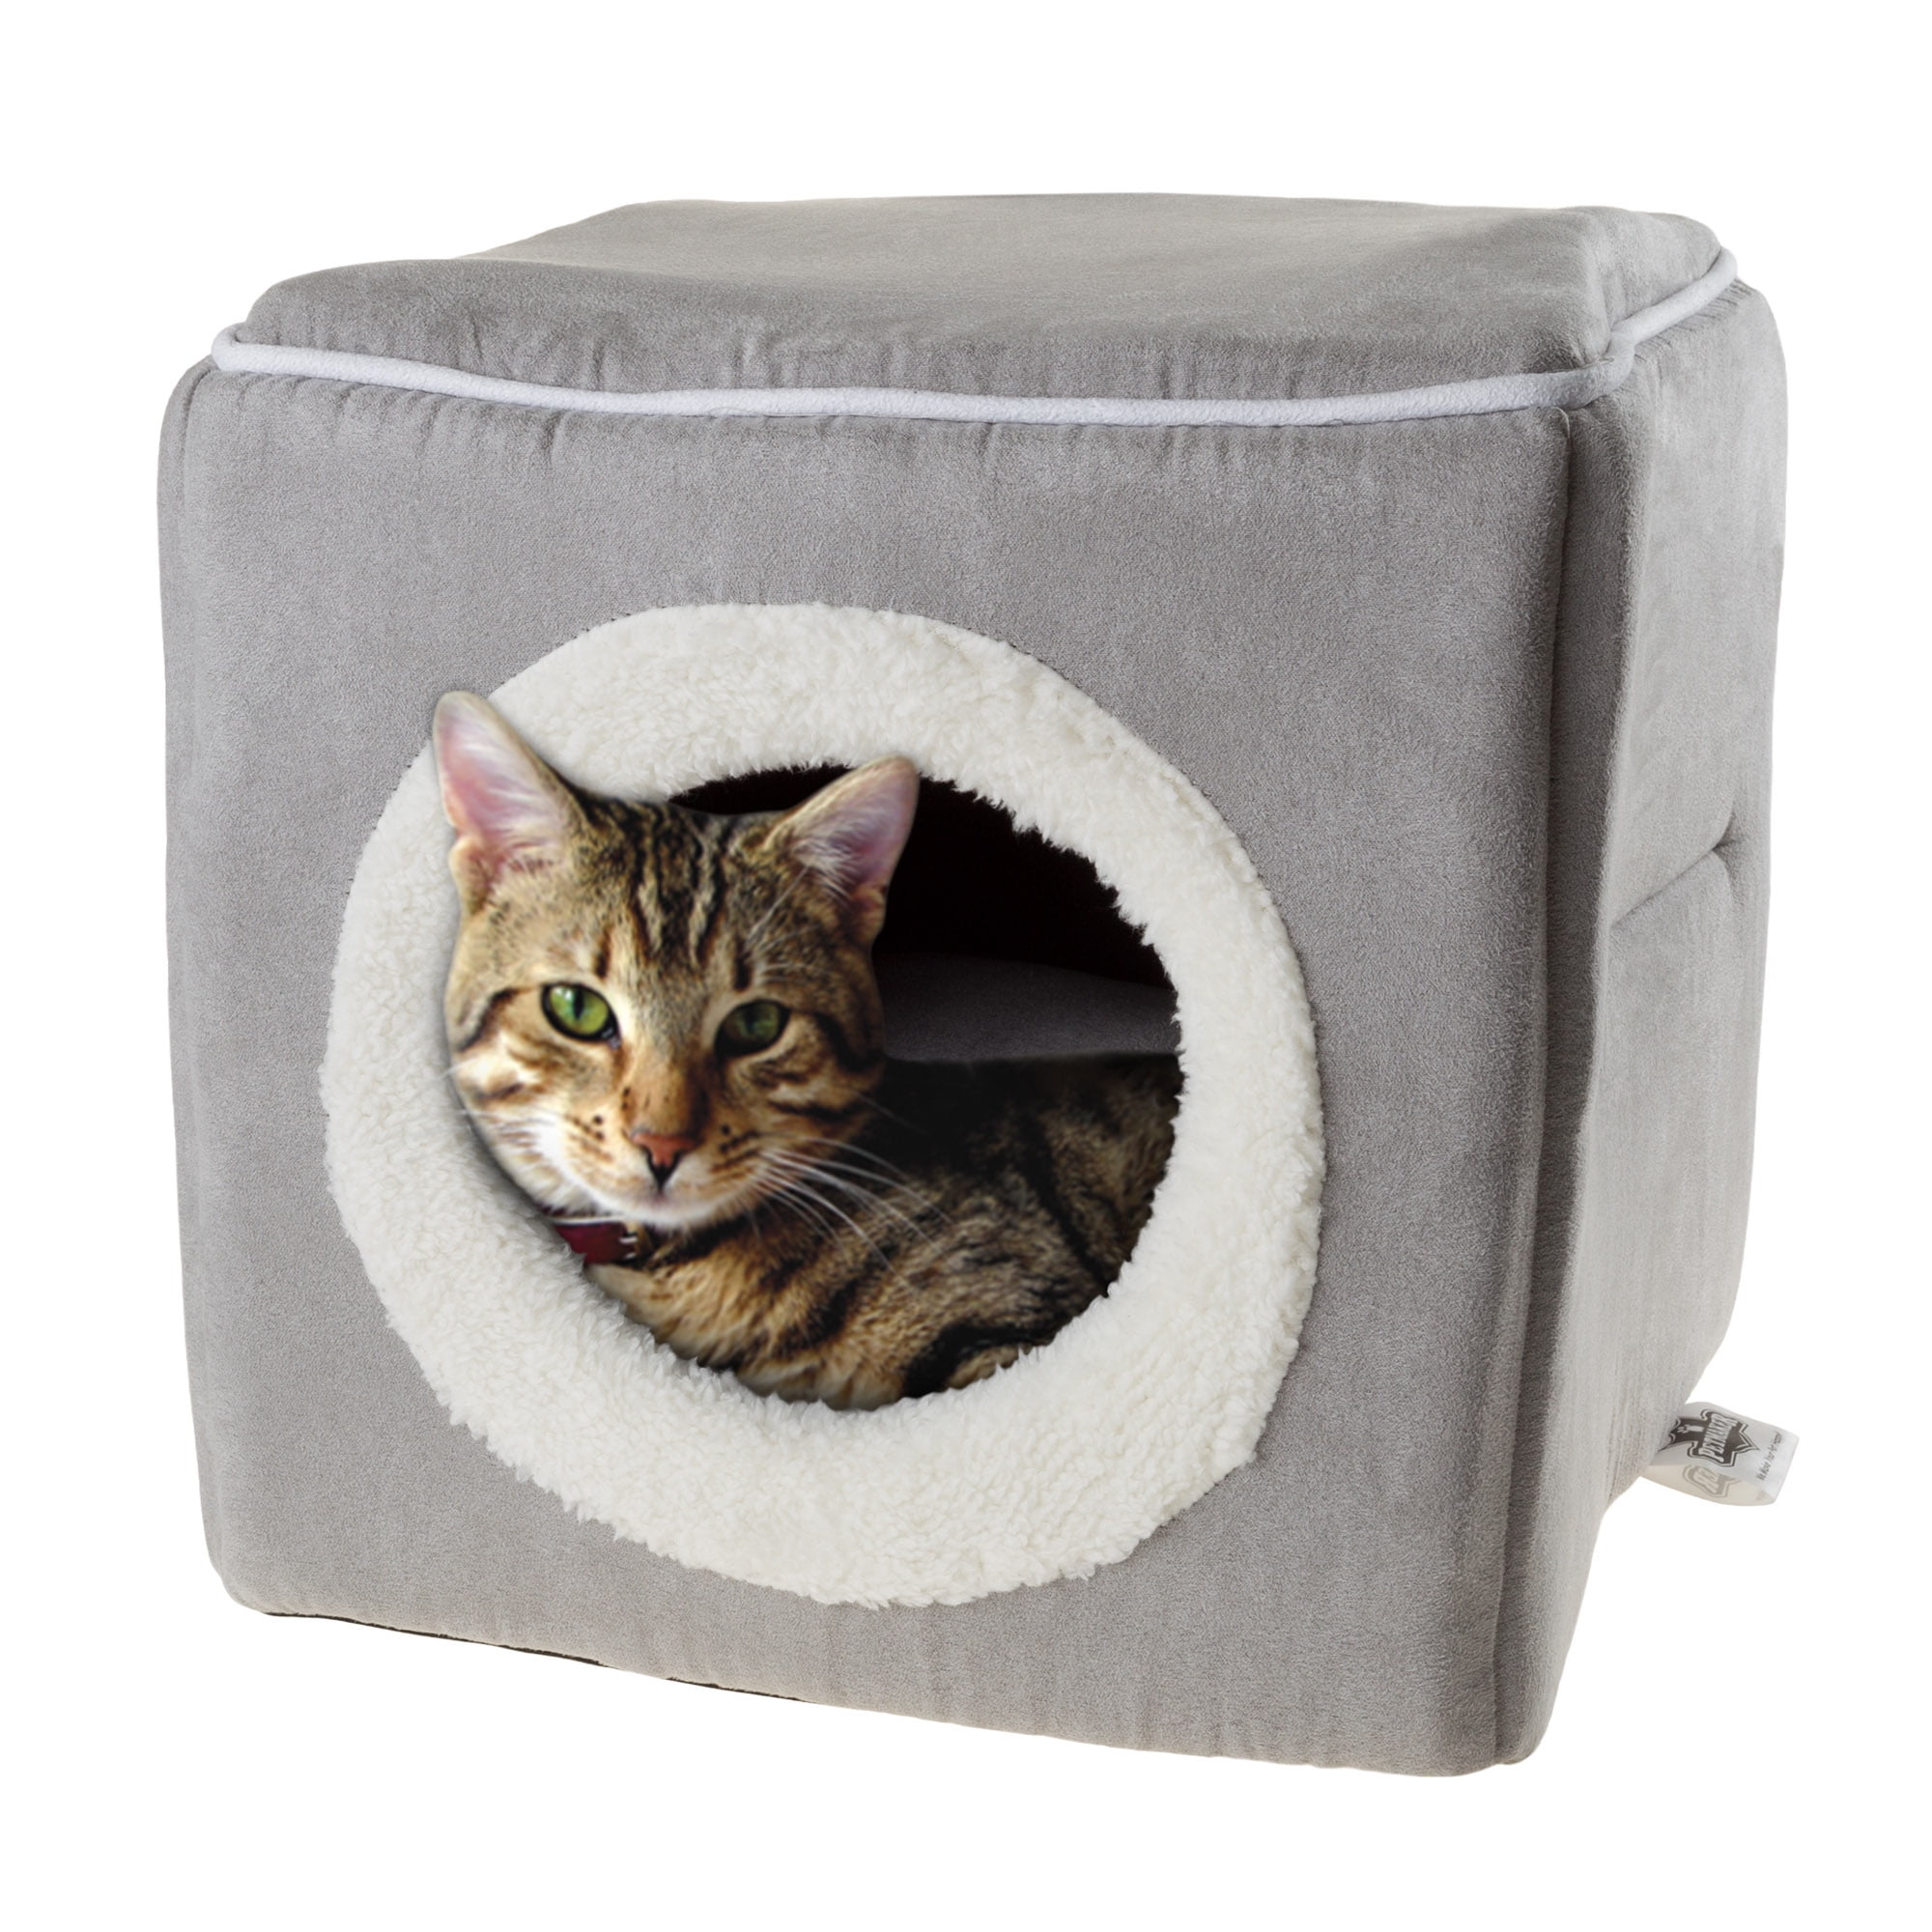 Cube cats. Cozy для кошек. Вставка в куб для кошки. Икеа куб с кошкой. United Pets Cat Cave.